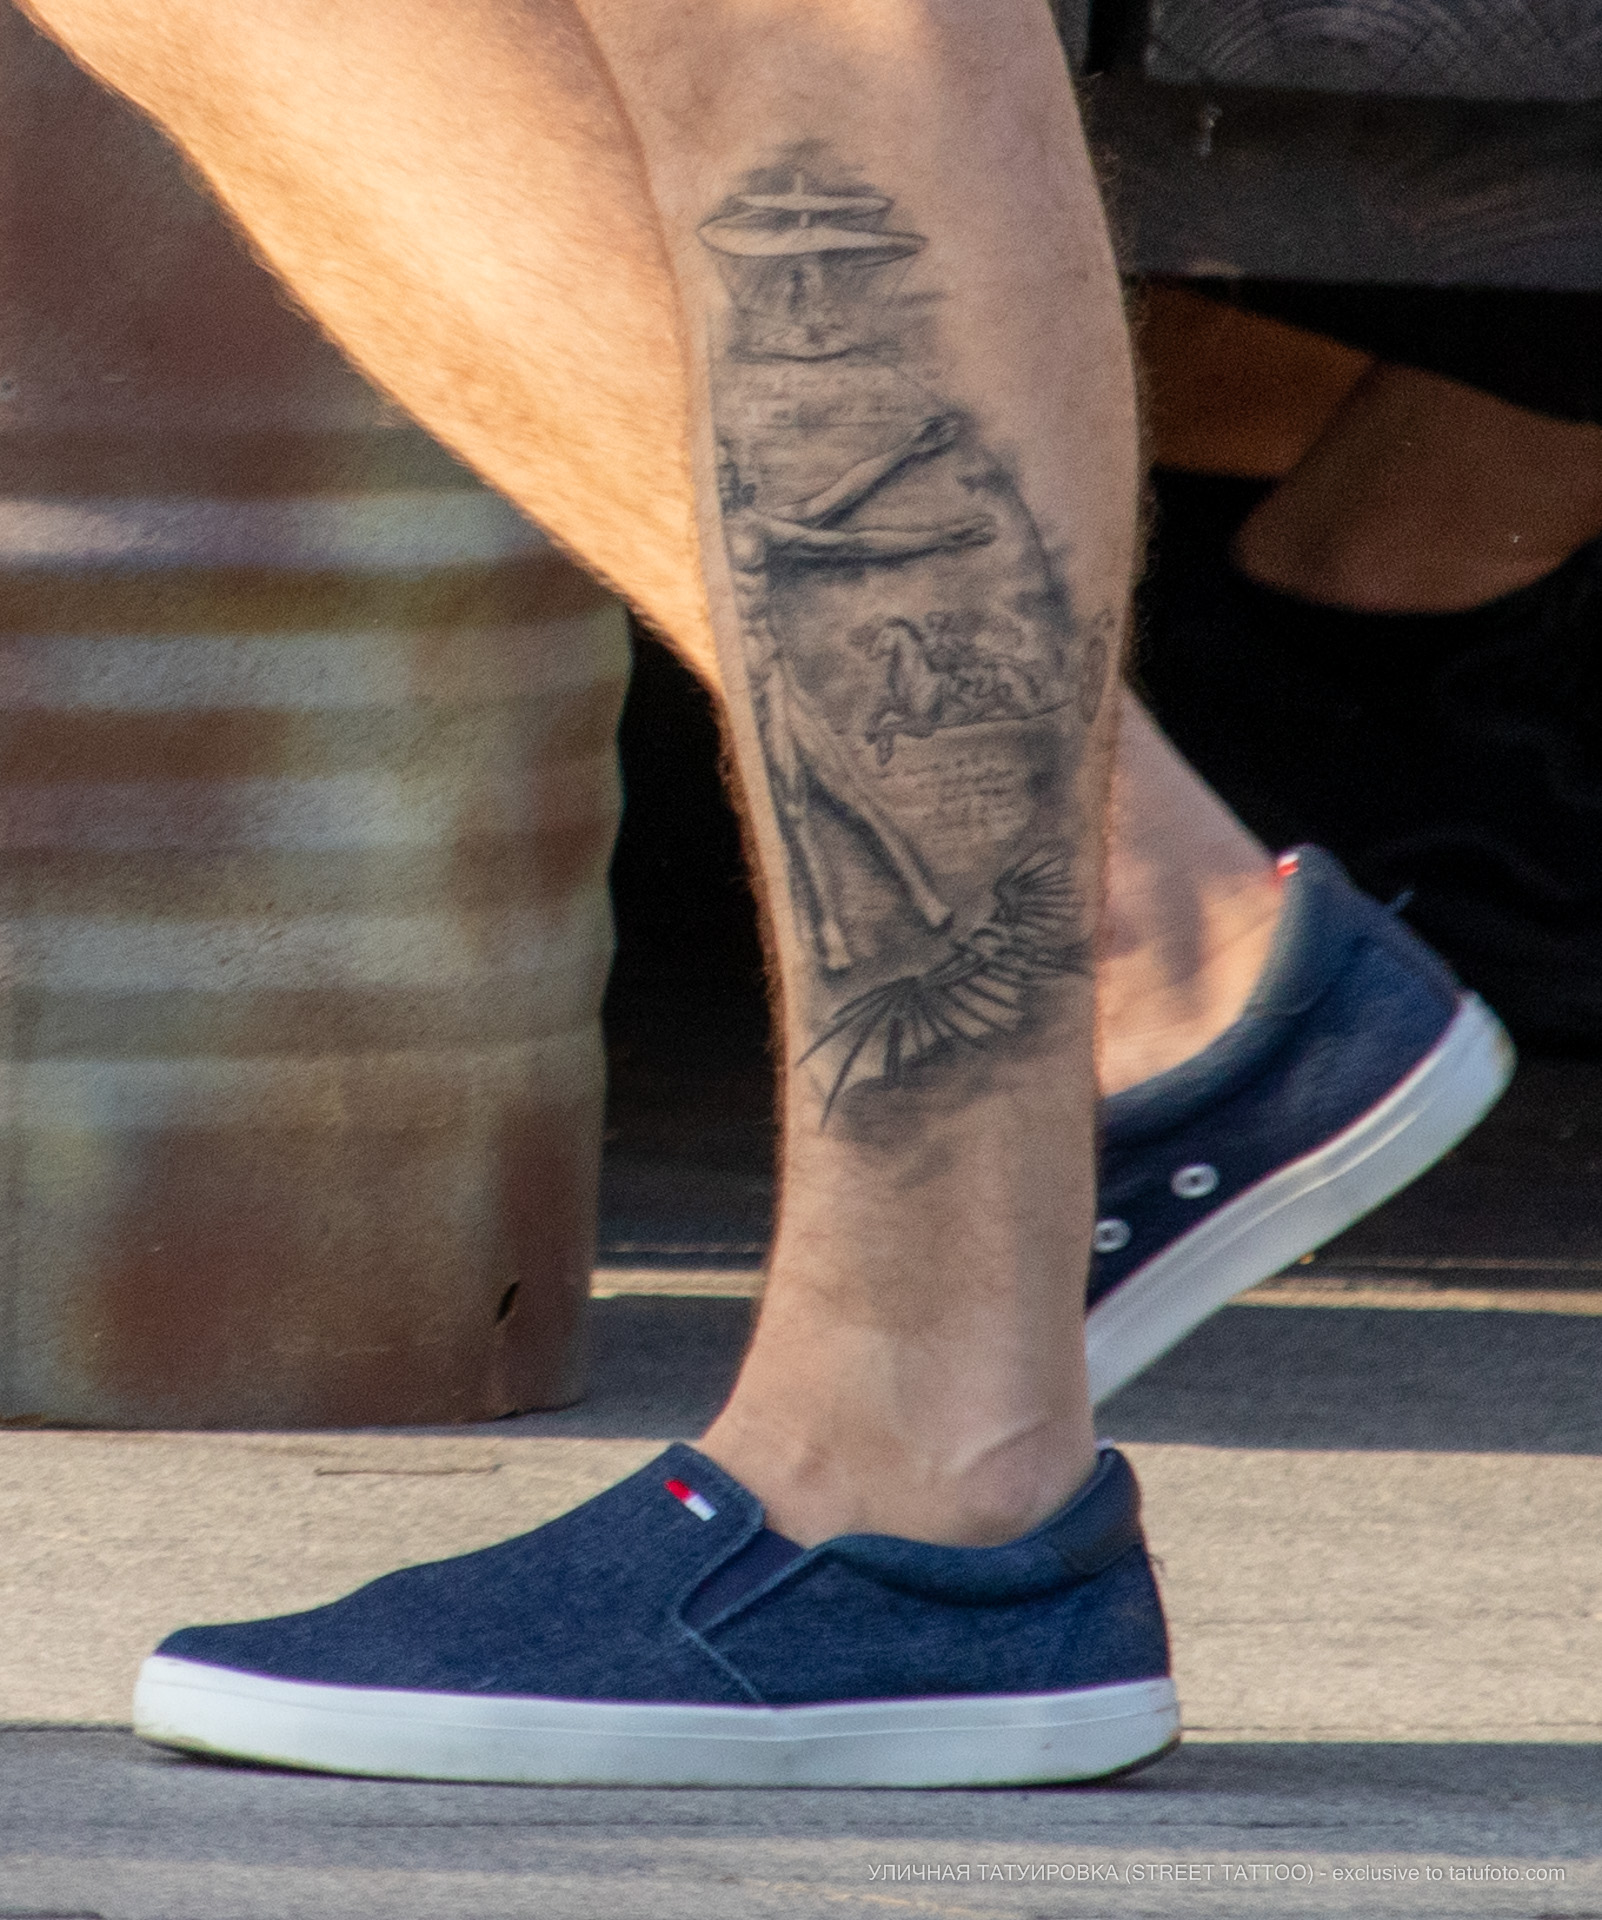 Фото татуировки с Витрувианским человеком и чертежами изобретений Леонардо да Винчи – Уличная татуировка (street tattoo) № 06 – 18.06.2020 – tatufoto.com 2